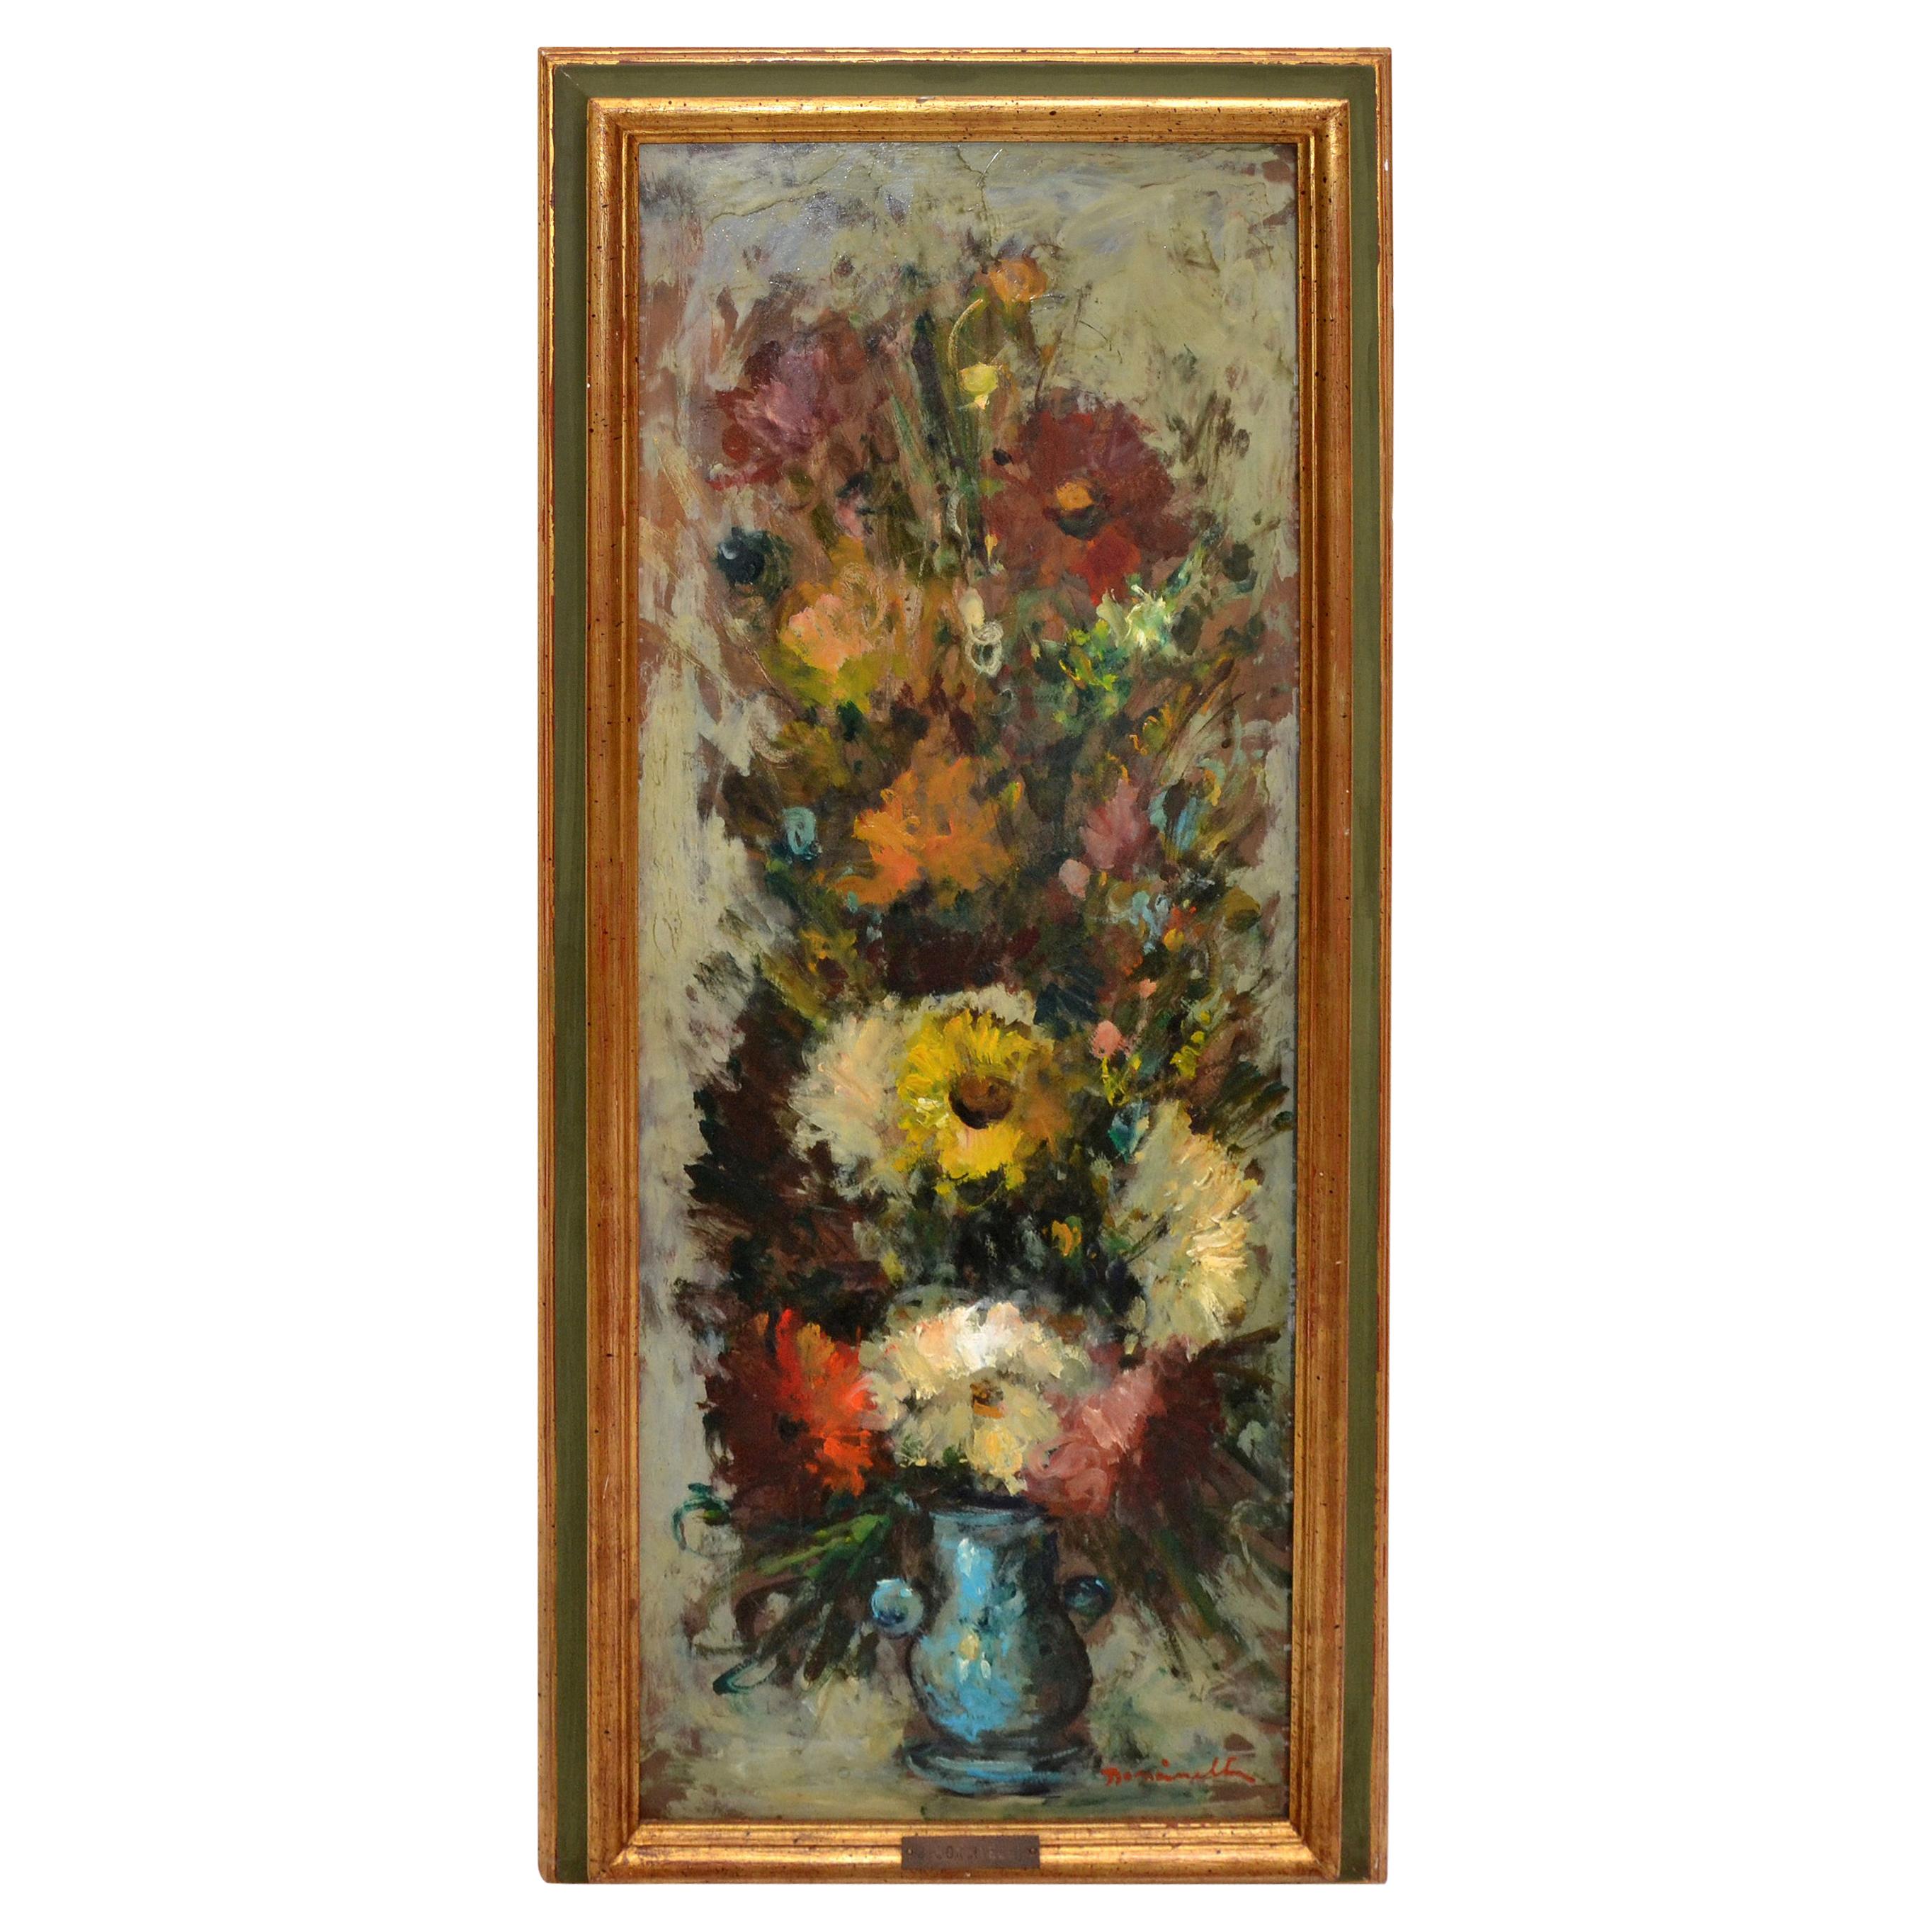 Ornate Gilt Framed Oil Painting Floral Bouquet Still Life Signed G. Boncinelli 